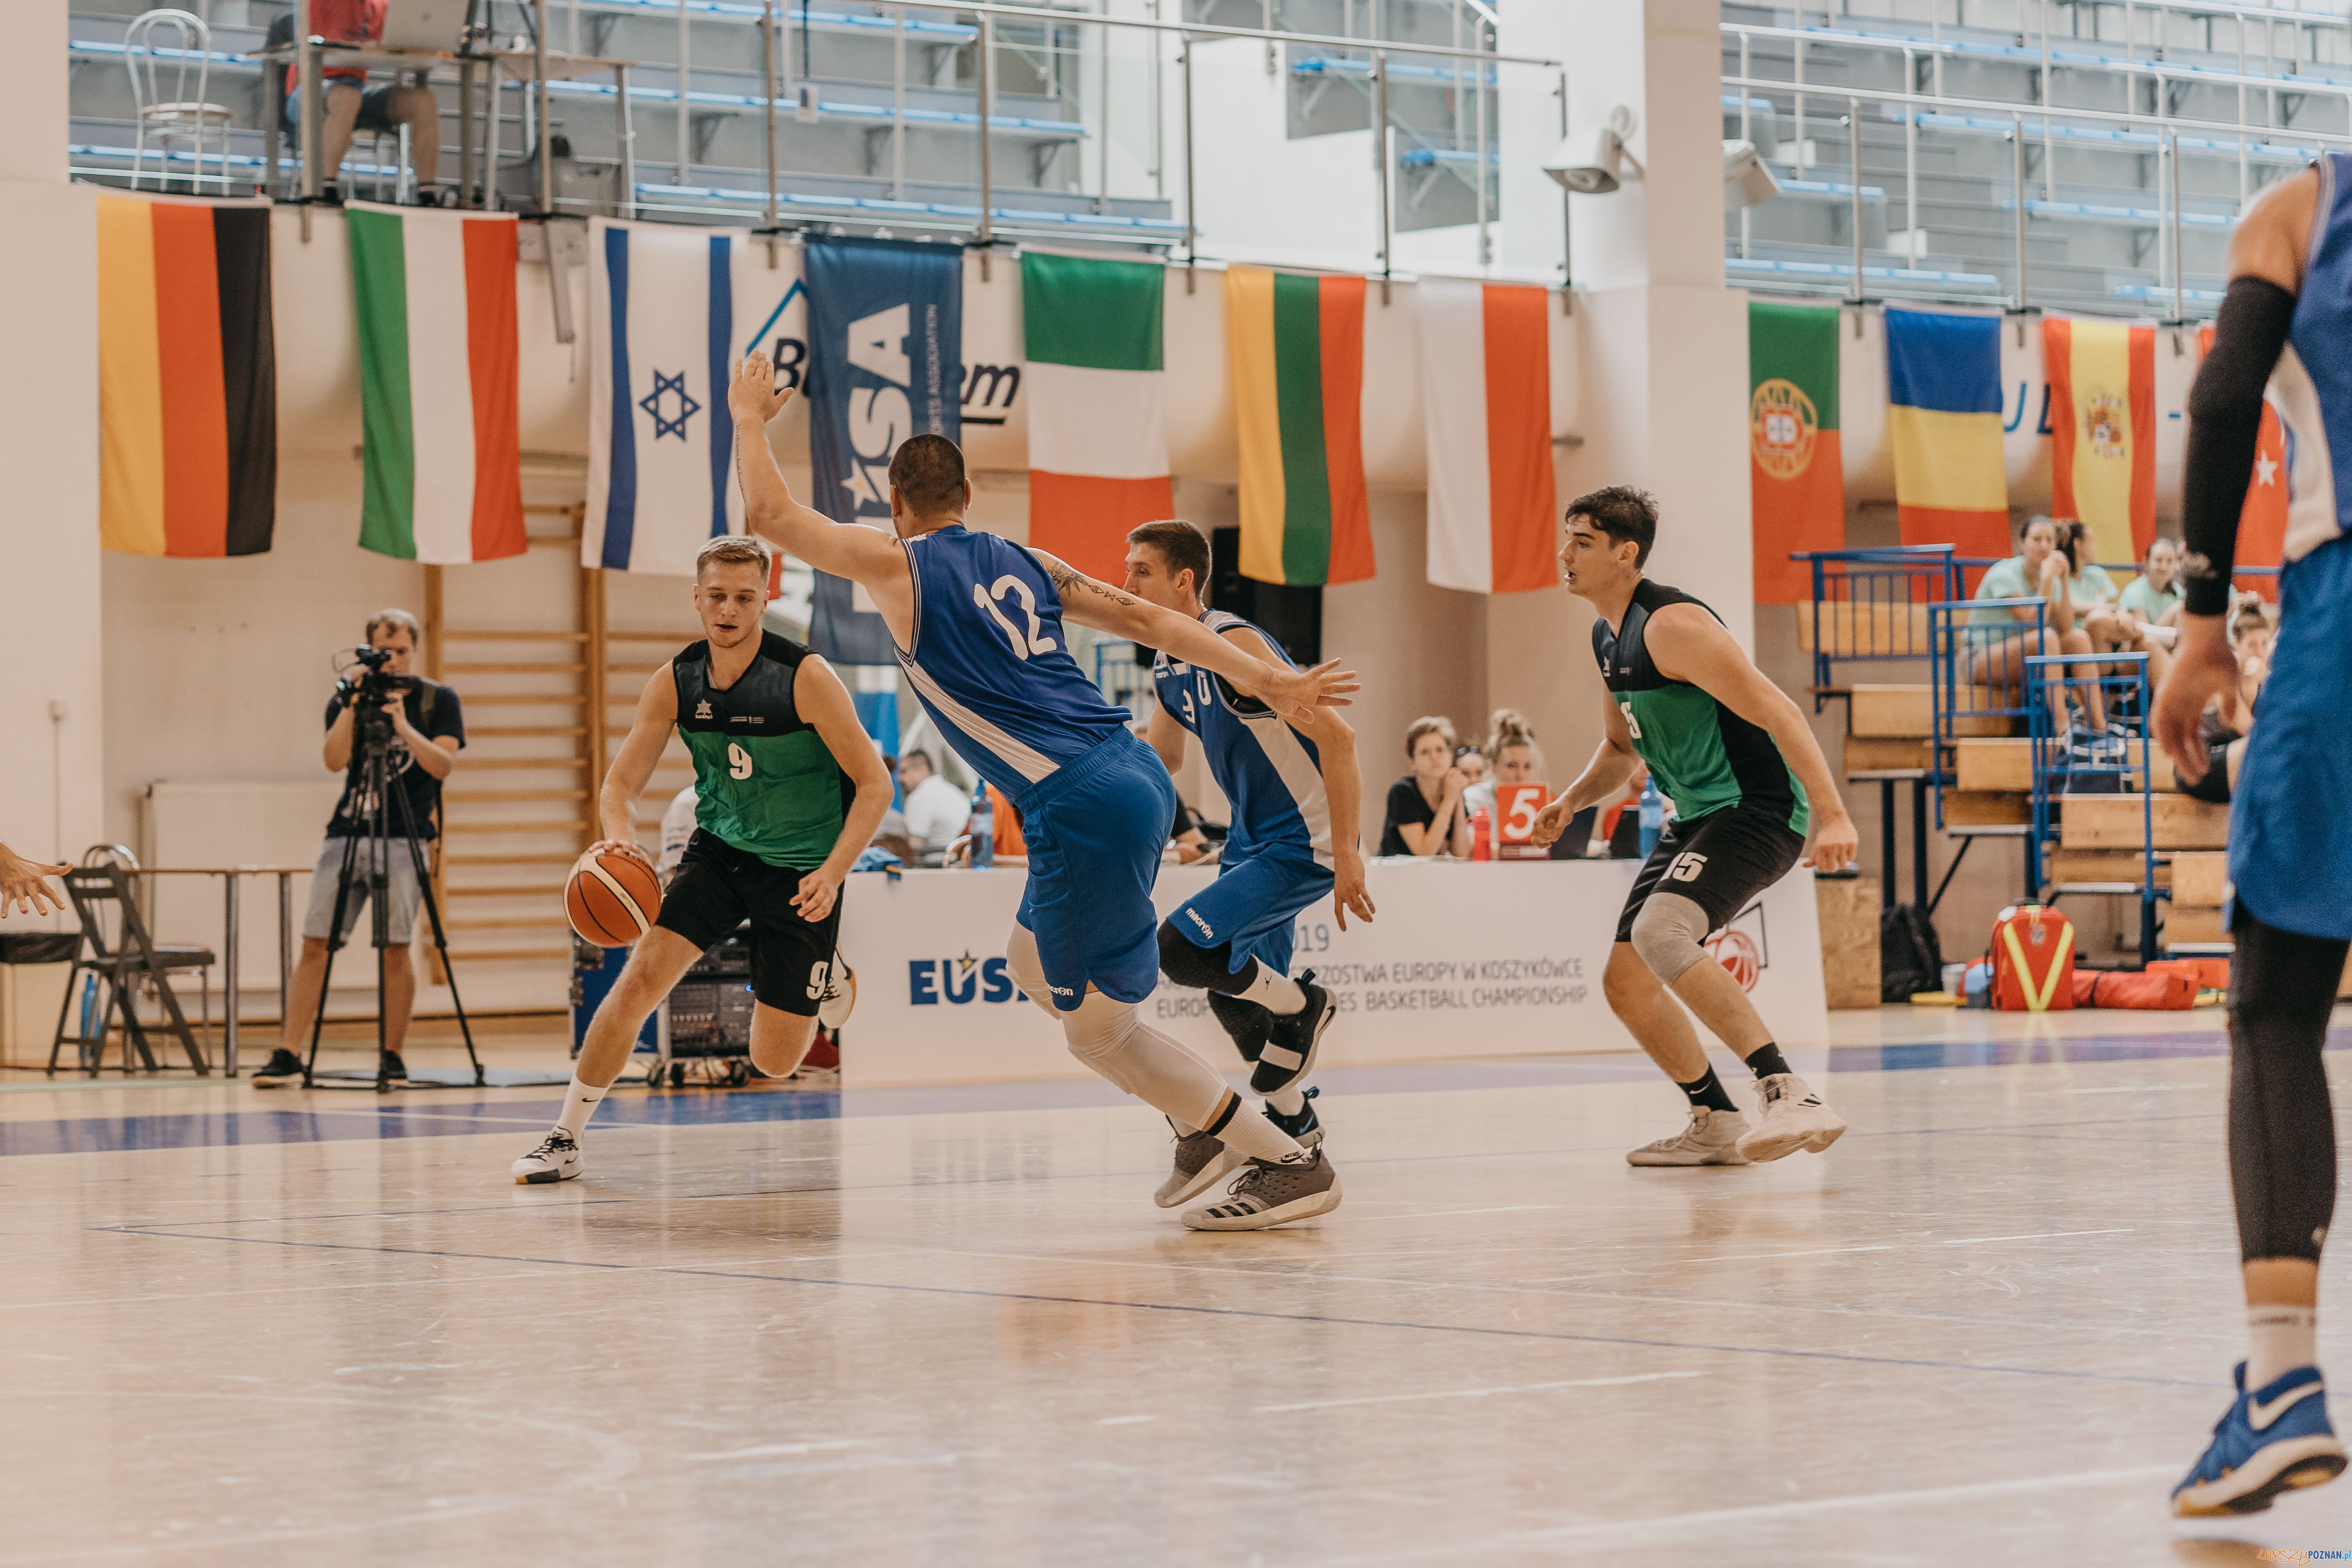 Akademickie Mistrzostwa Europy w koszykówce  Foto: materiały prasowe